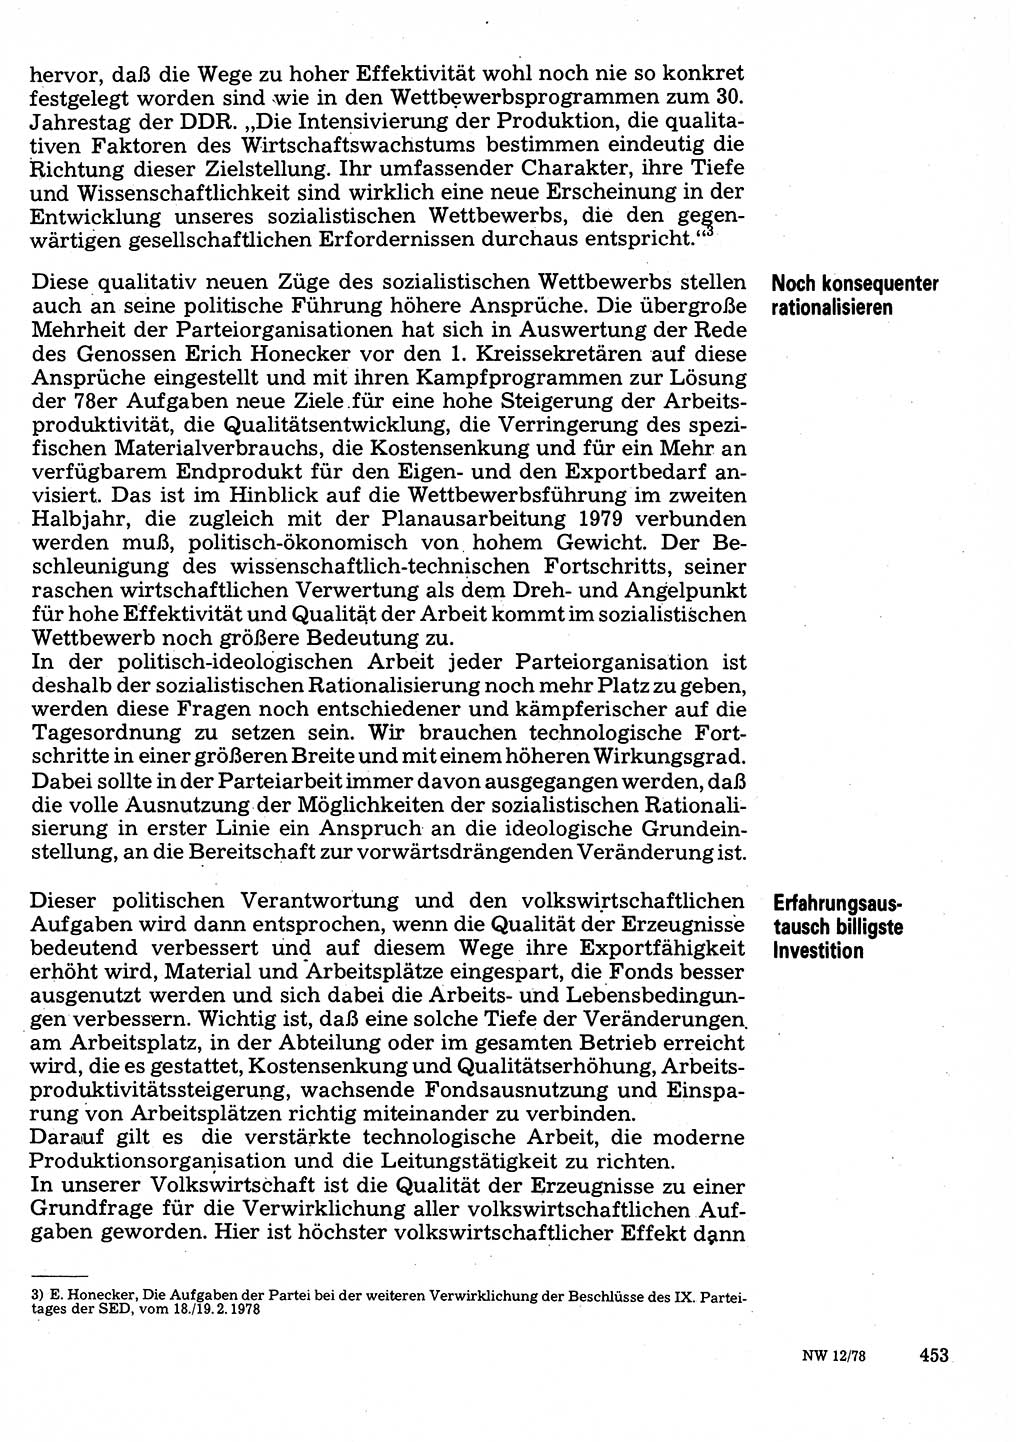 Neuer Weg (NW), Organ des Zentralkomitees (ZK) der SED (Sozialistische Einheitspartei Deutschlands) für Fragen des Parteilebens, 33. Jahrgang [Deutsche Demokratische Republik (DDR)] 1978, Seite 453 (NW ZK SED DDR 1978, S. 453)